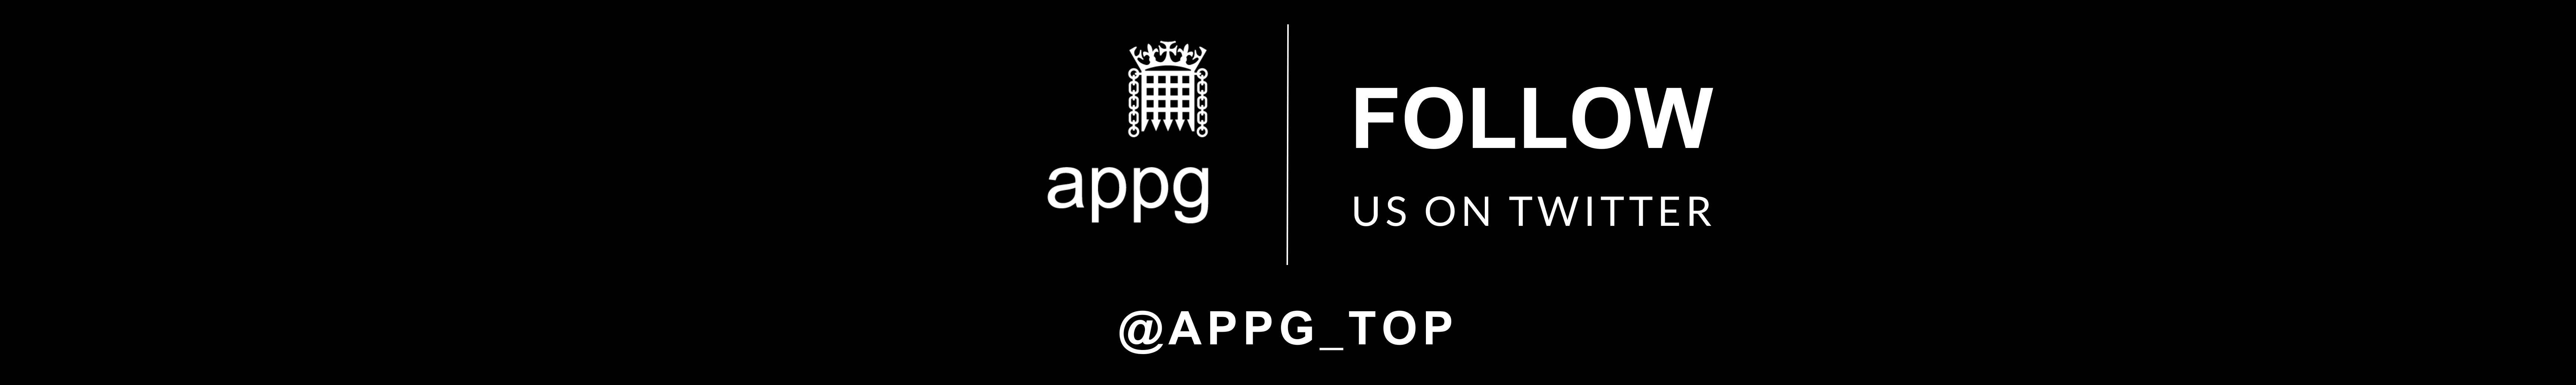 Follow us APPG TOP